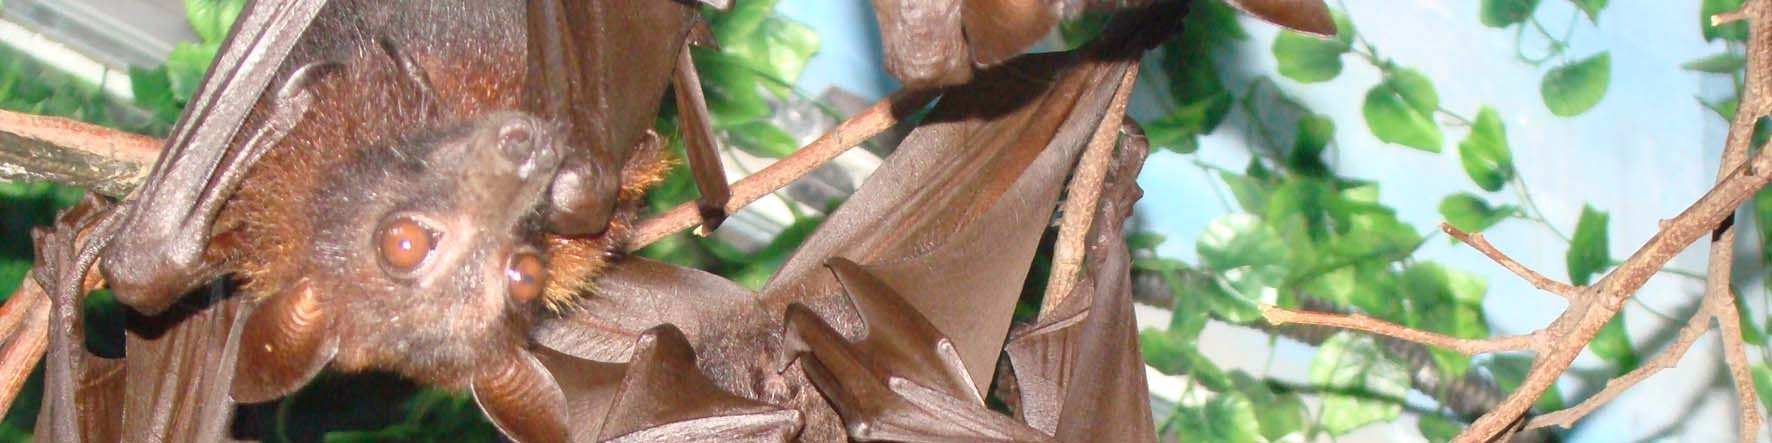 1. INTRODUÇÃO GERAL 1.1. As guildas de morcegos A Ordem Chiroptera representa um quarto de toda a fauna de mamíferos do mundo, com dezoito famílias, 202 gêneros e